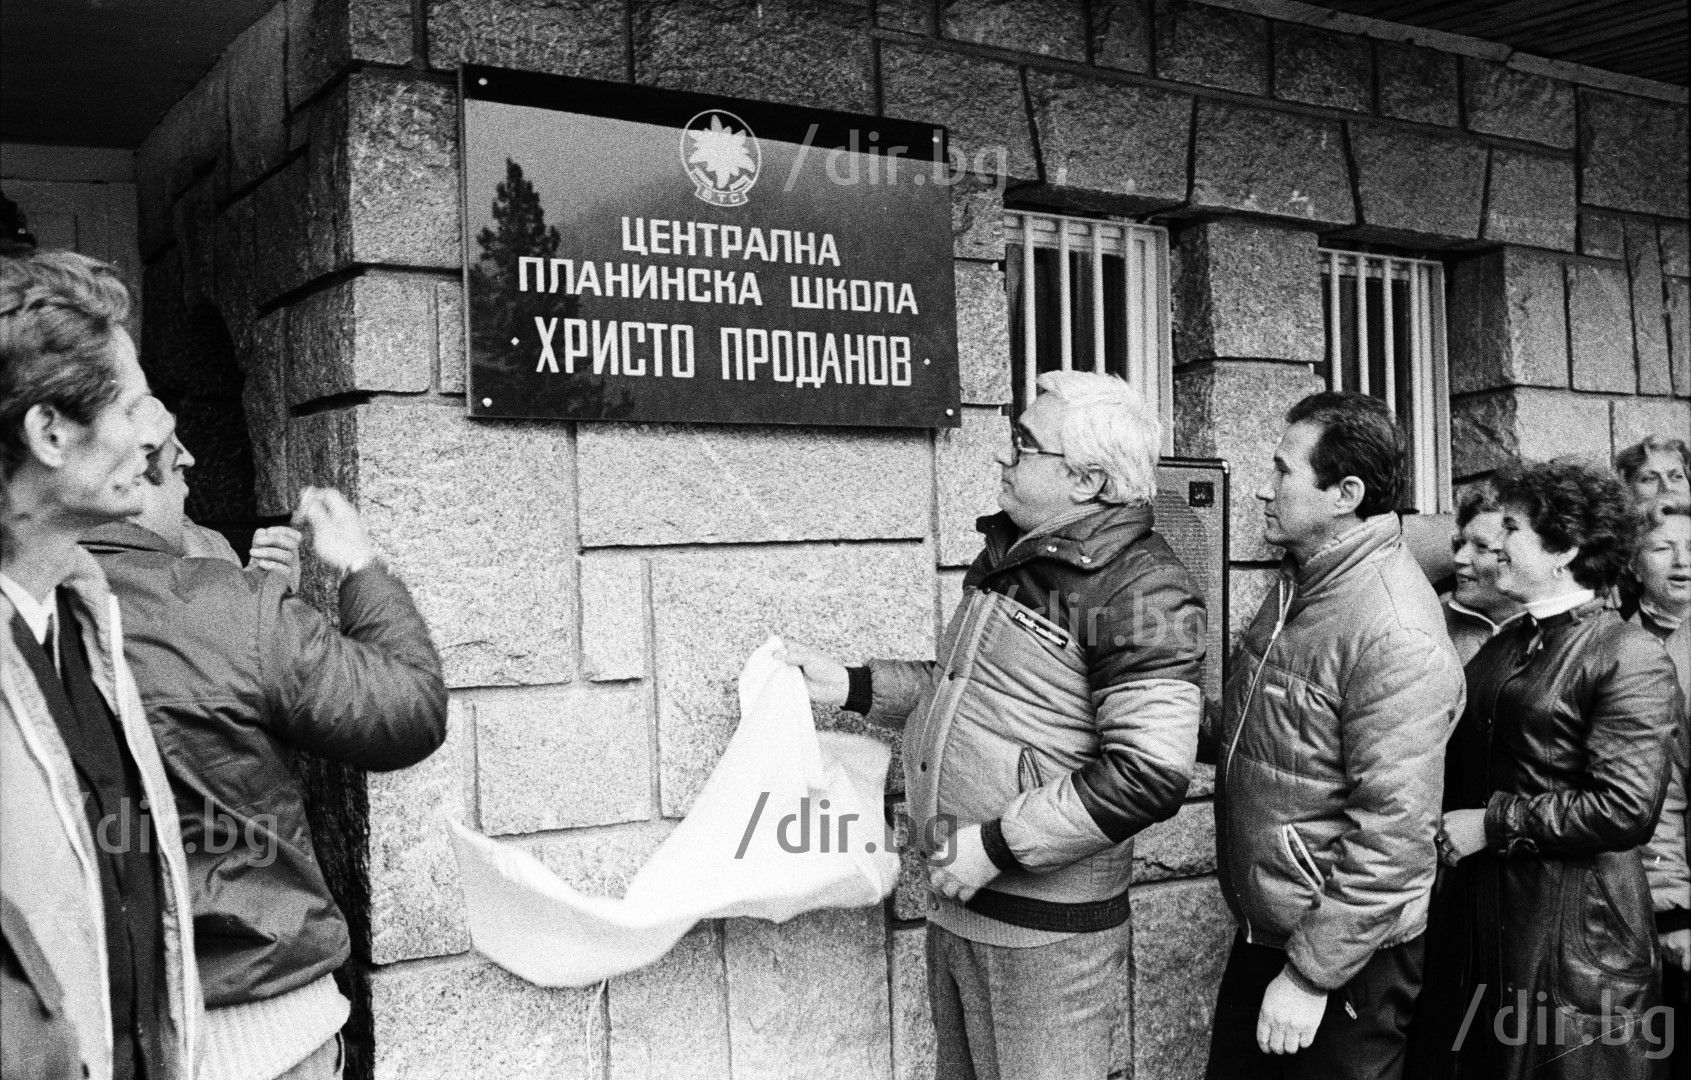 Април 1985 г. - Луканов е открива паметна плоча с името на Христо Проданов при кръщаване на планинска школа на името му на "Мальовица"